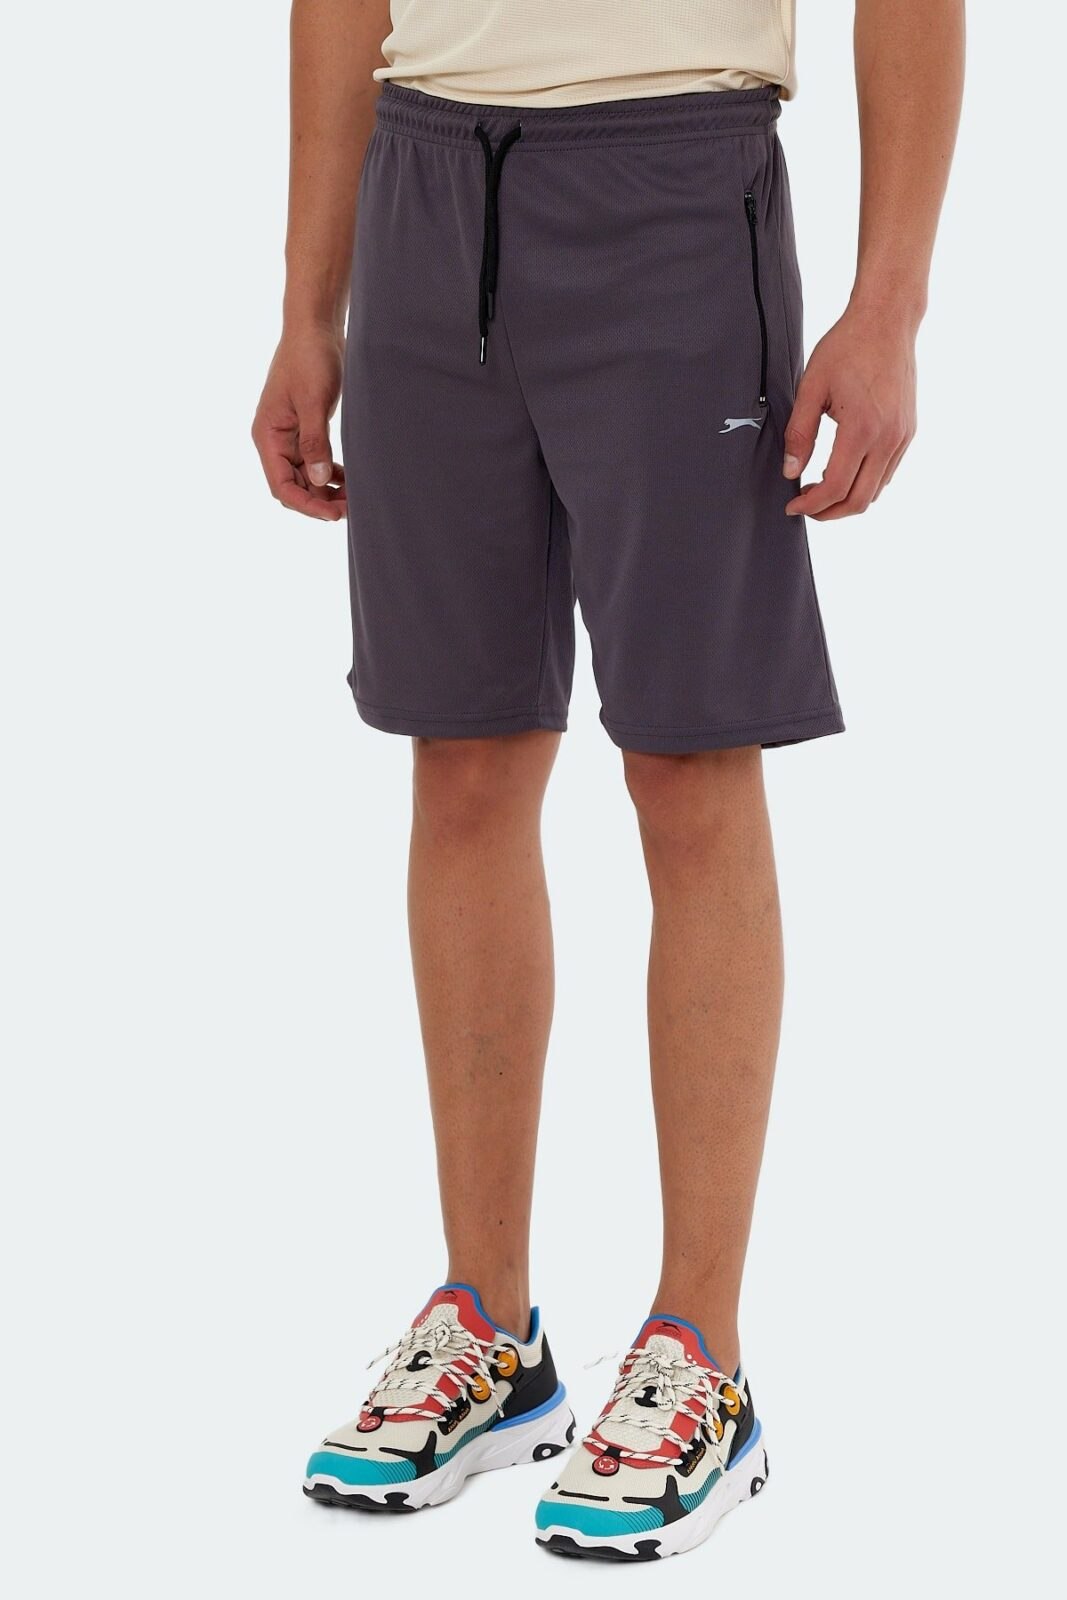 Slazenger Shorts - Gray -